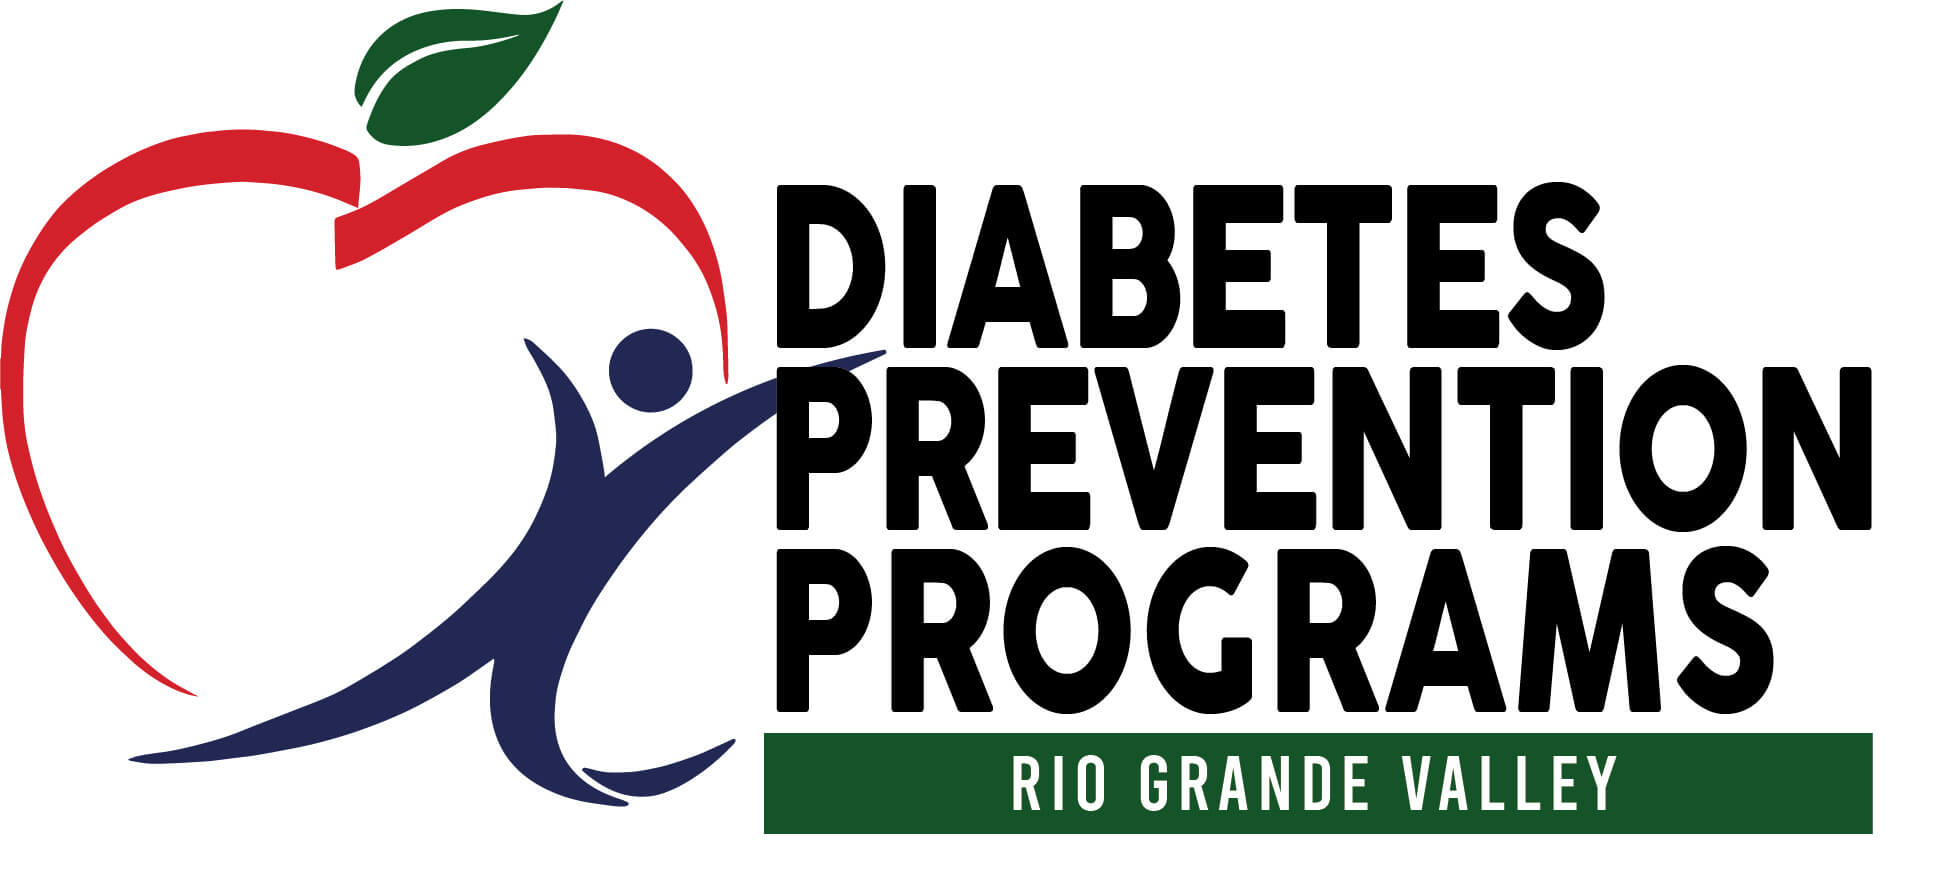 diabetes-prevention-program-logo-name.jpg